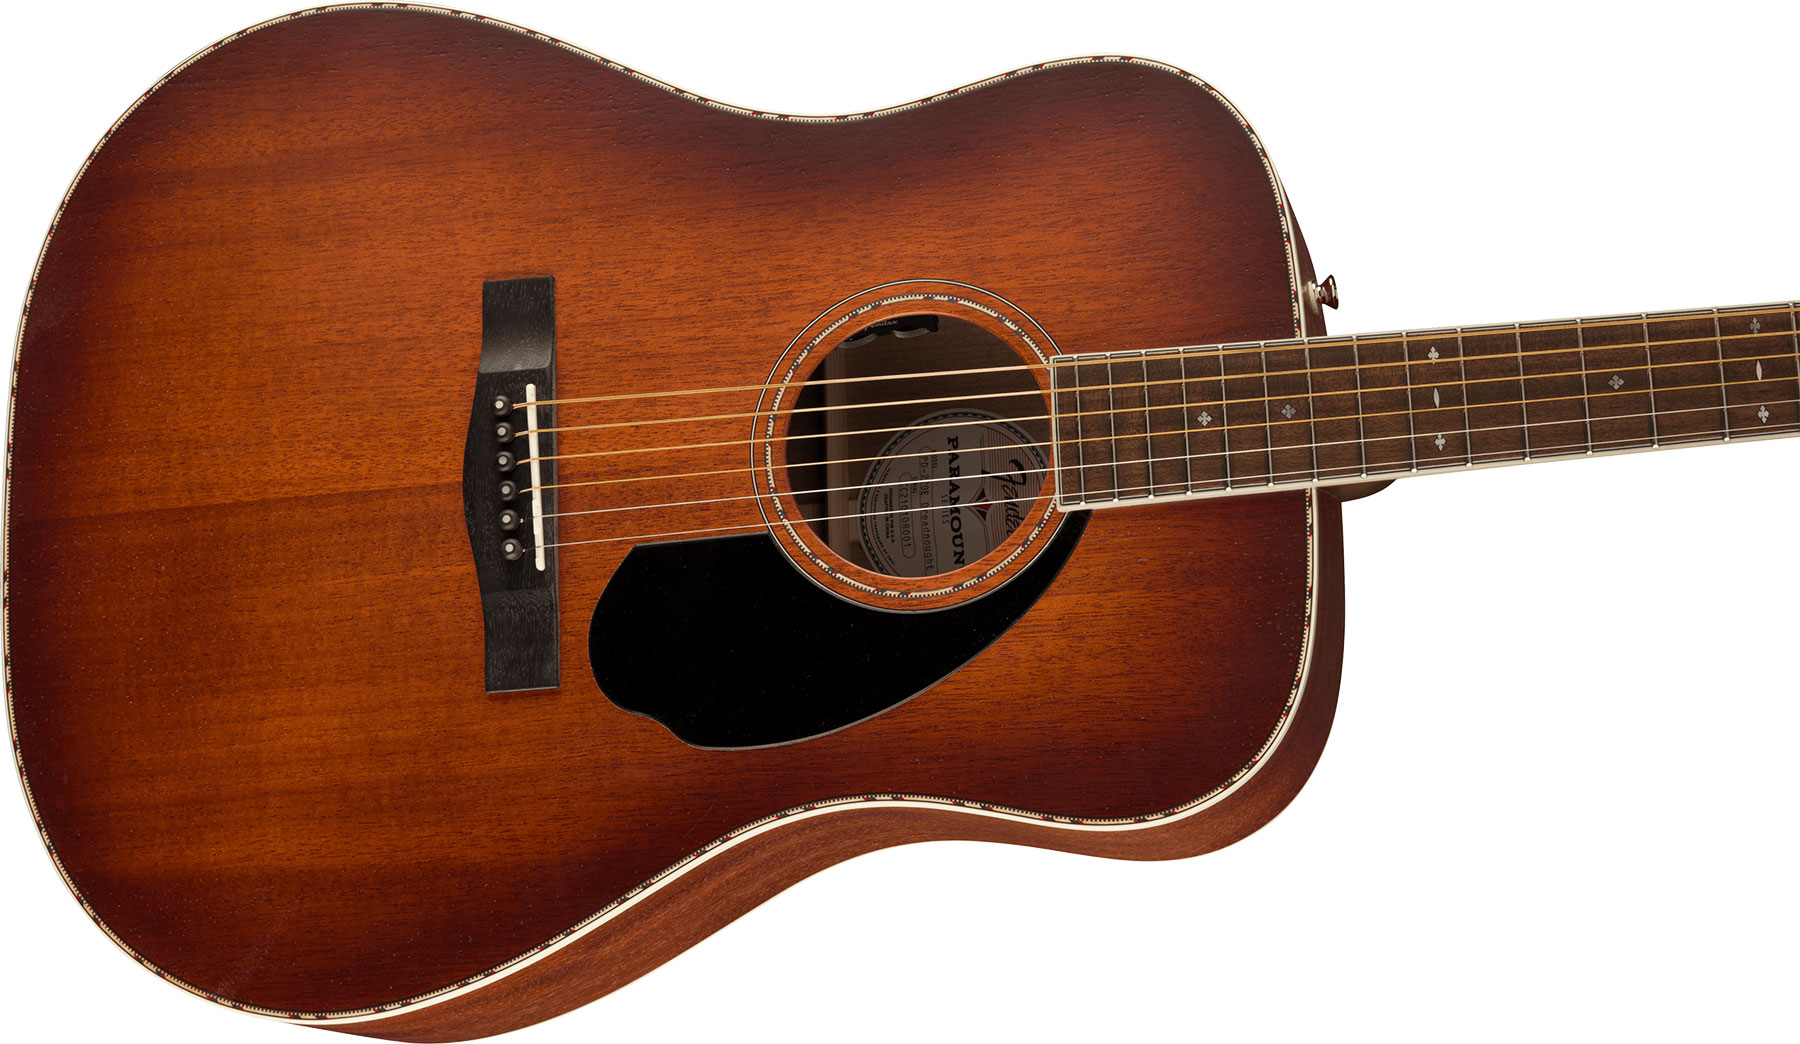 Fender Pd-220e Paramount Dreadnought Tout Acajou Ova - Aged Cognac Burst - Electro acoustic guitar - Variation 2